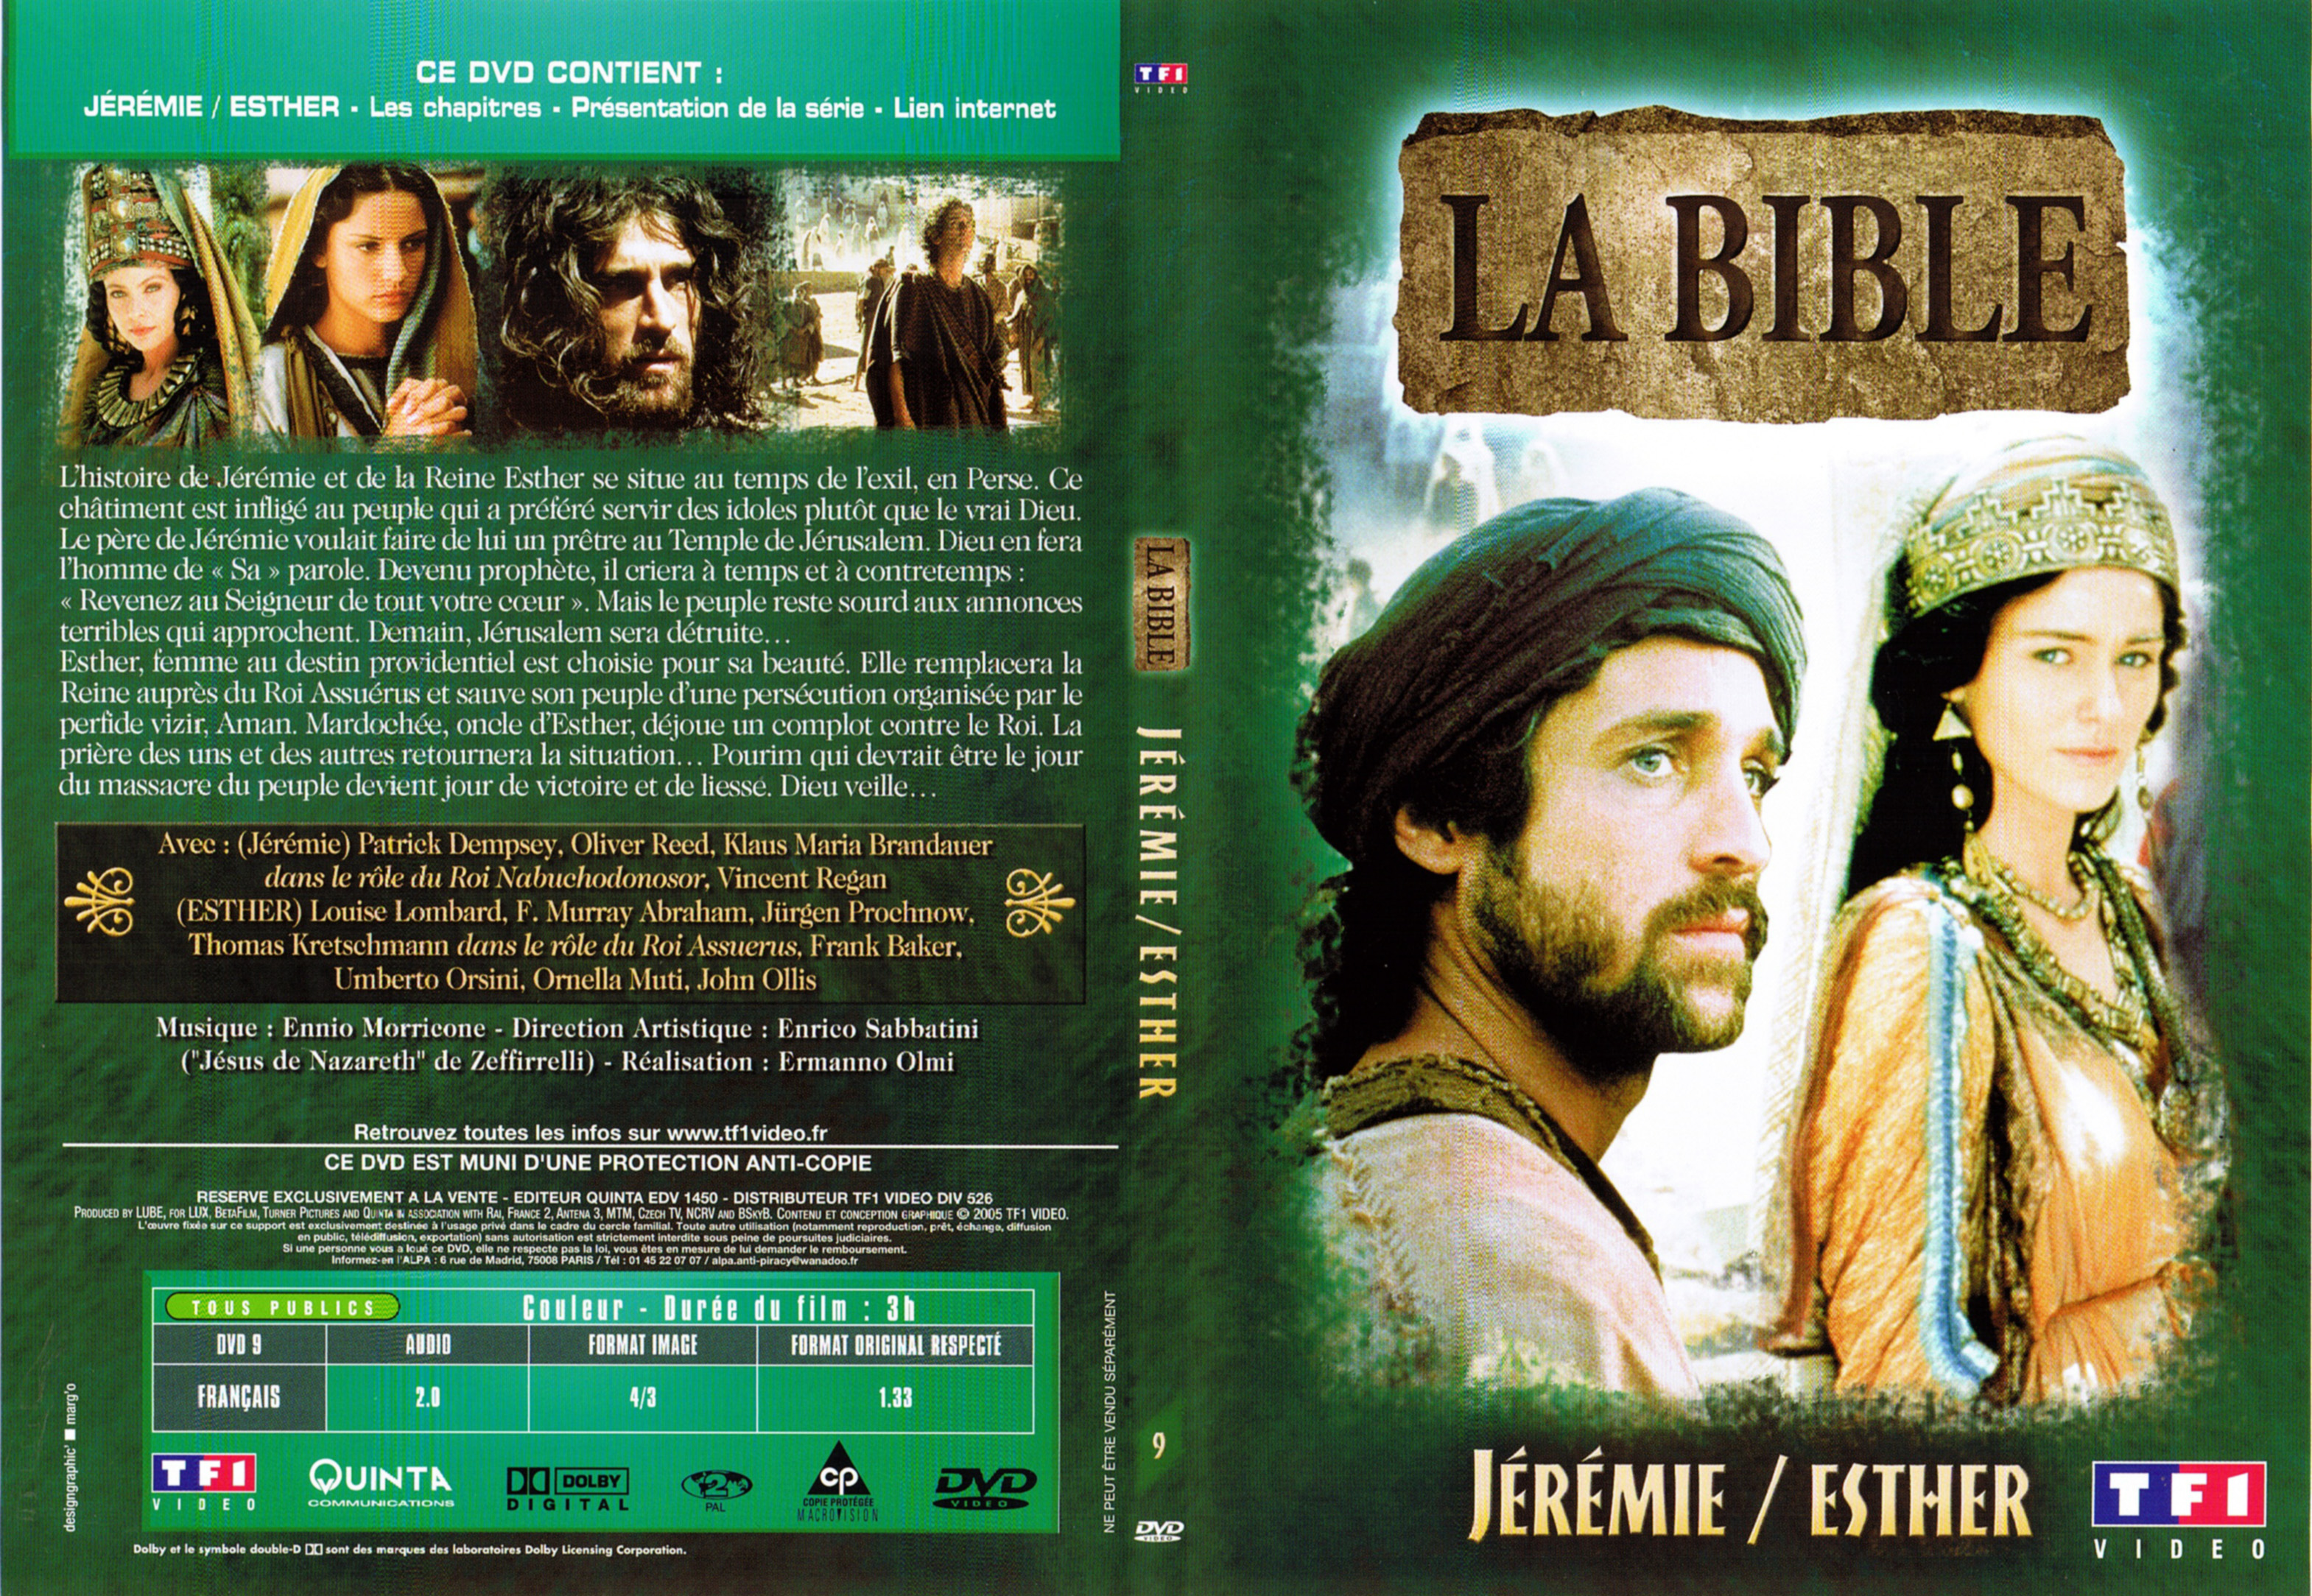 Jaquette DVD La bible - Jrmie et Esther